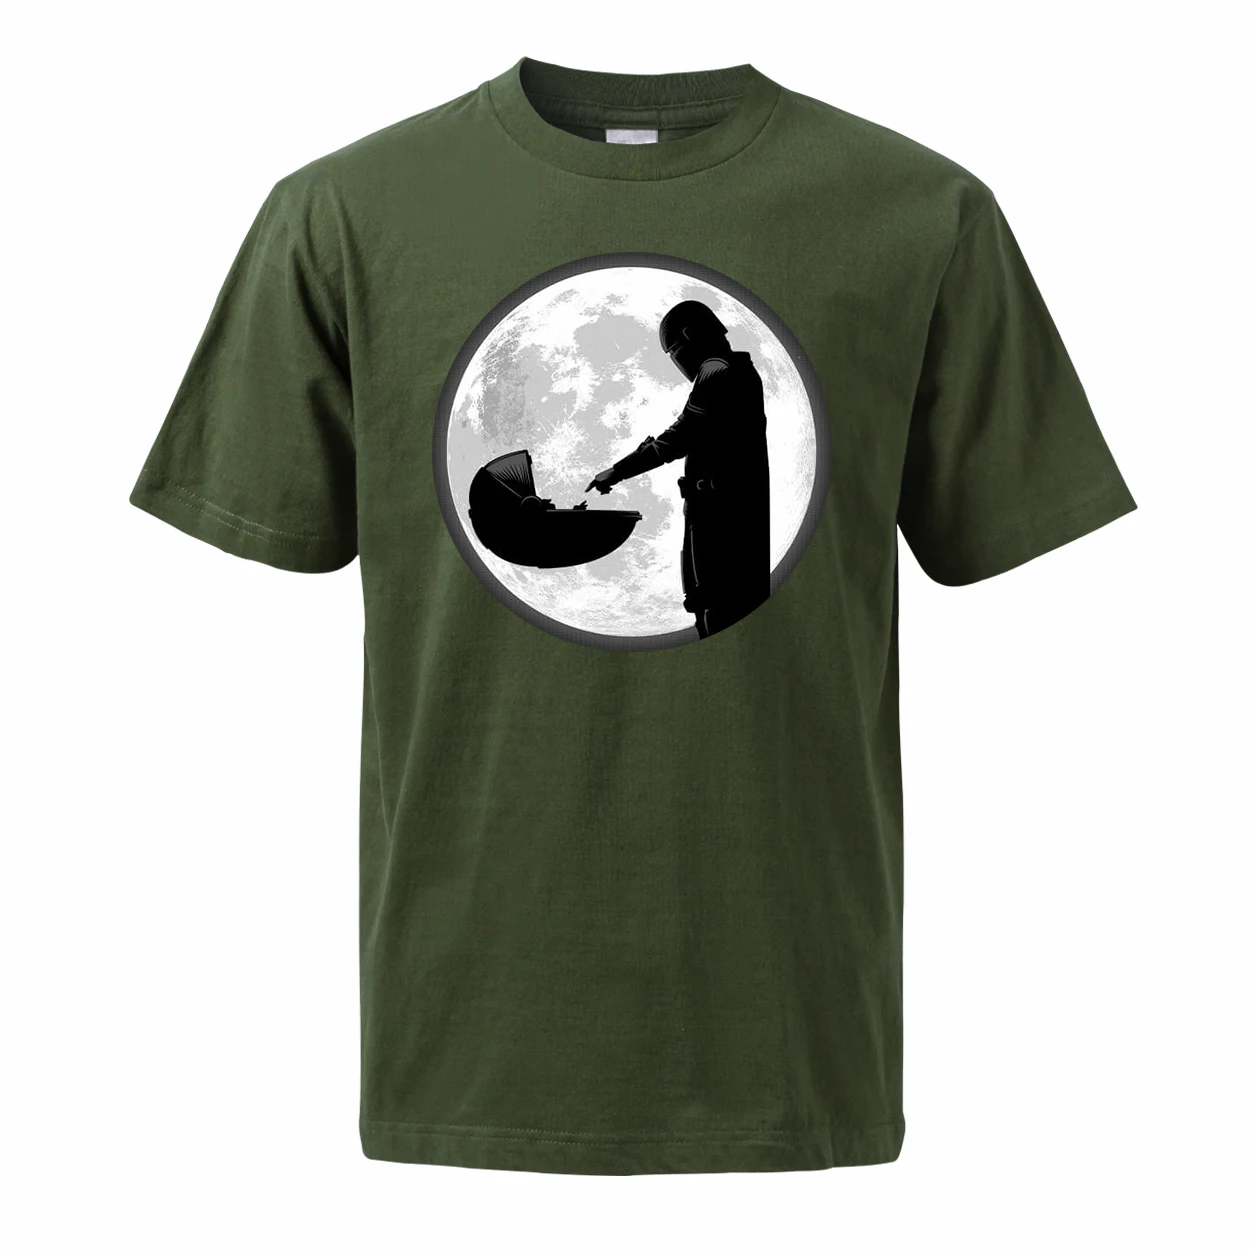 Мужские футболки с телевизионным шоу мандалориана г. Летние топы, футболки из хлопка, футболки с коротким рукавом и вырезом лодочкой крутая Детская уличная одежда йода - Цвет: Dark Green